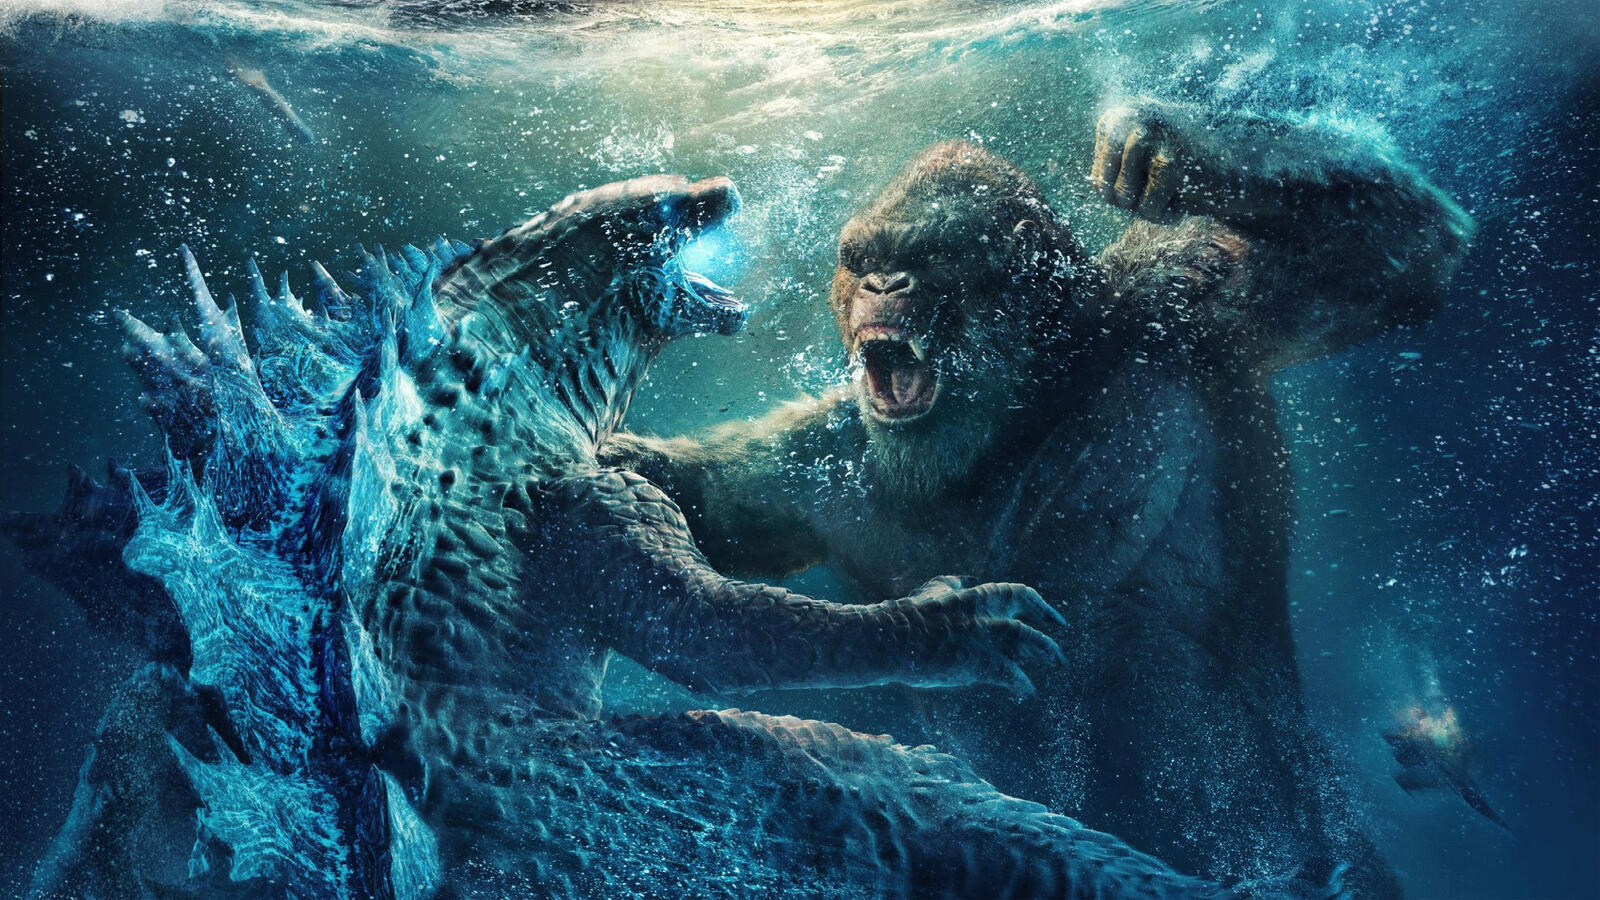 Wallpapers godzilla vs kong King Kong movies on the desktop